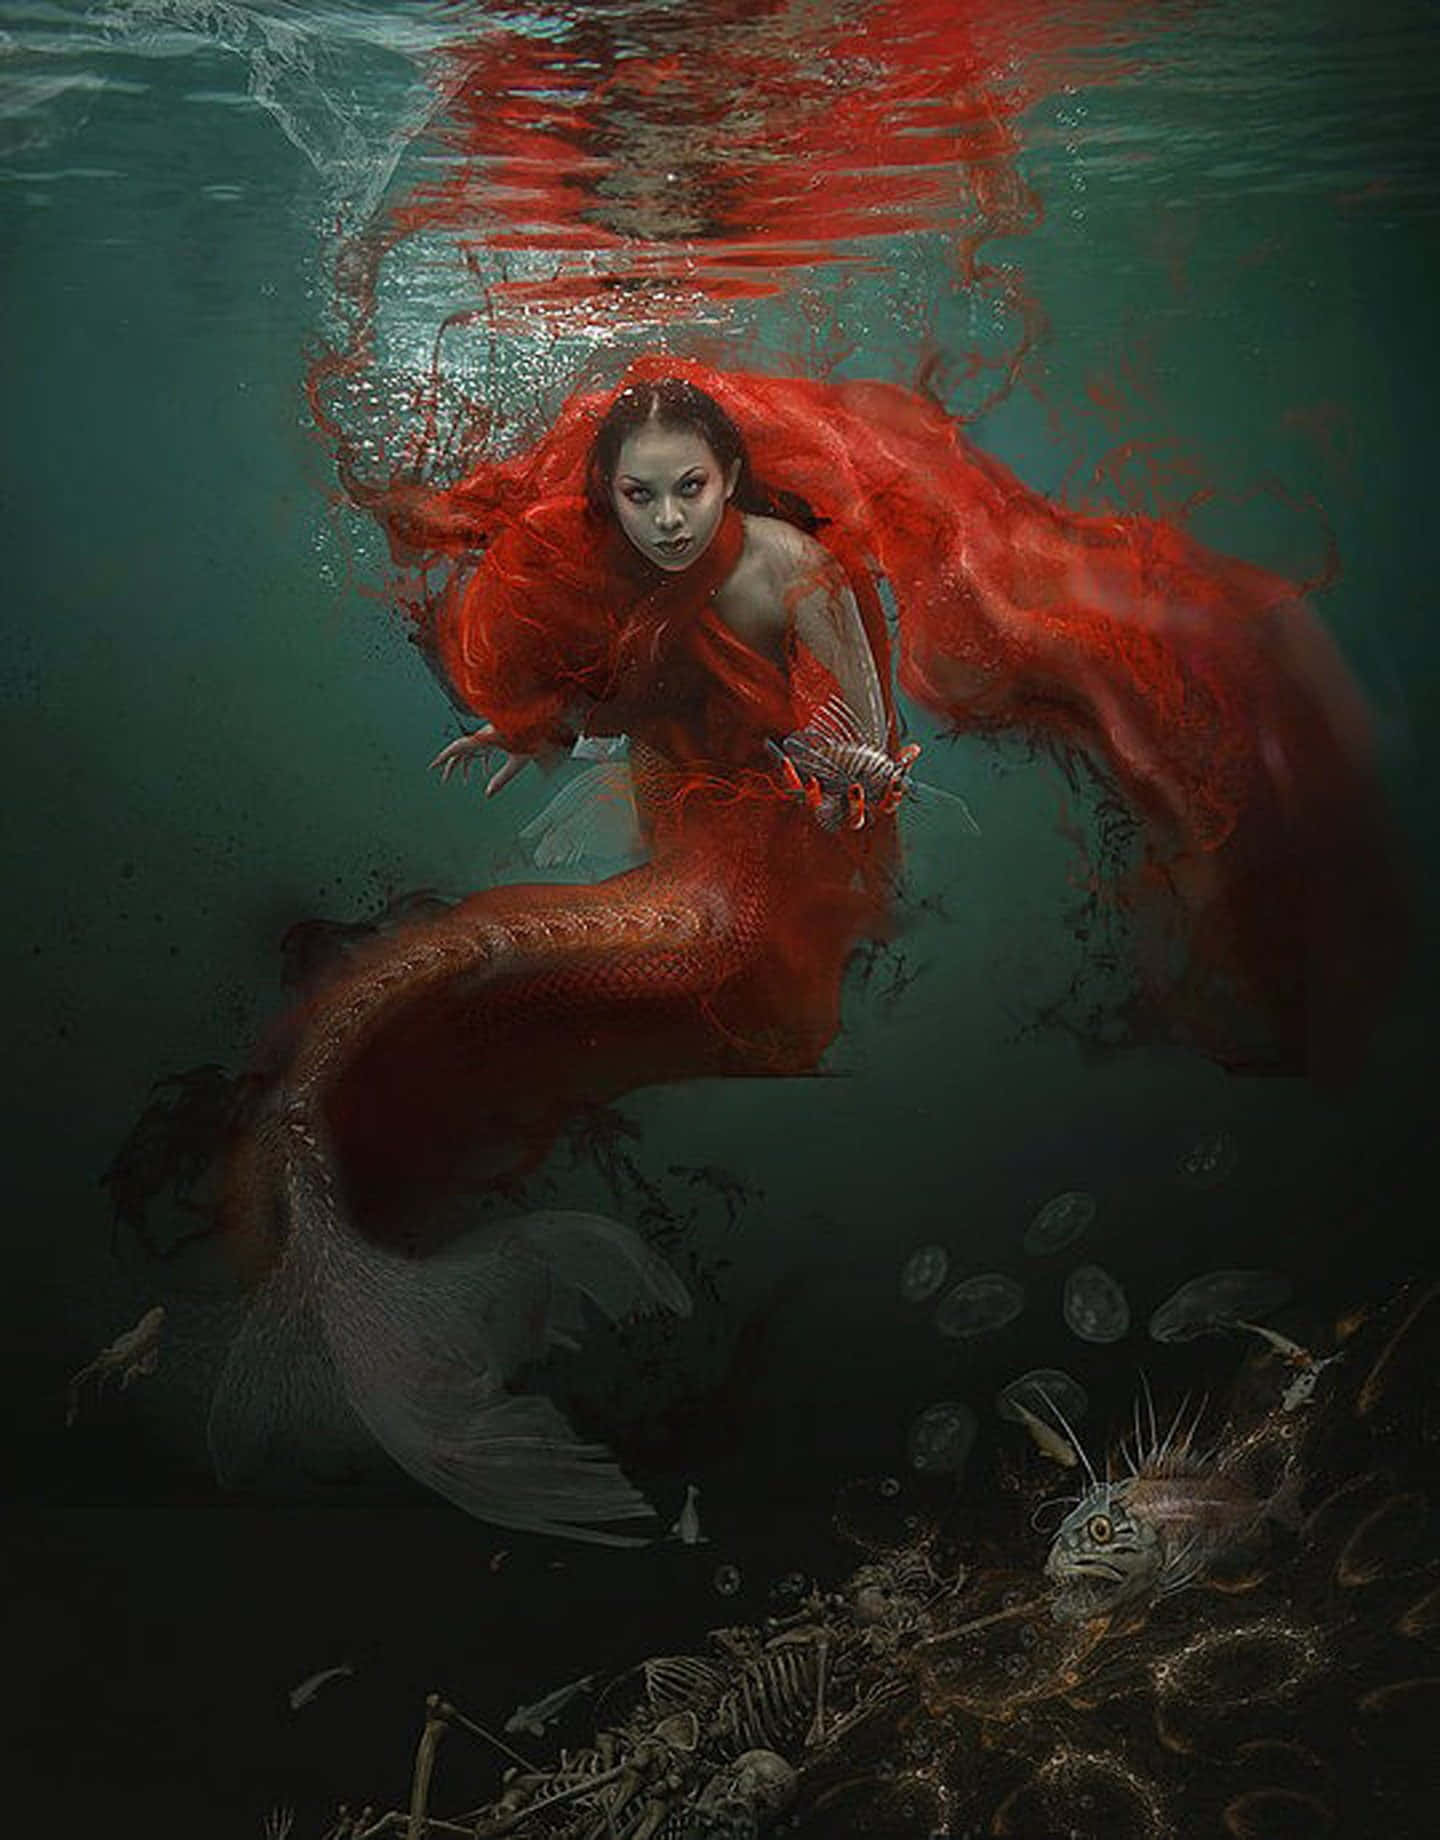 Imagende Arte En Color Rojo De Sirena